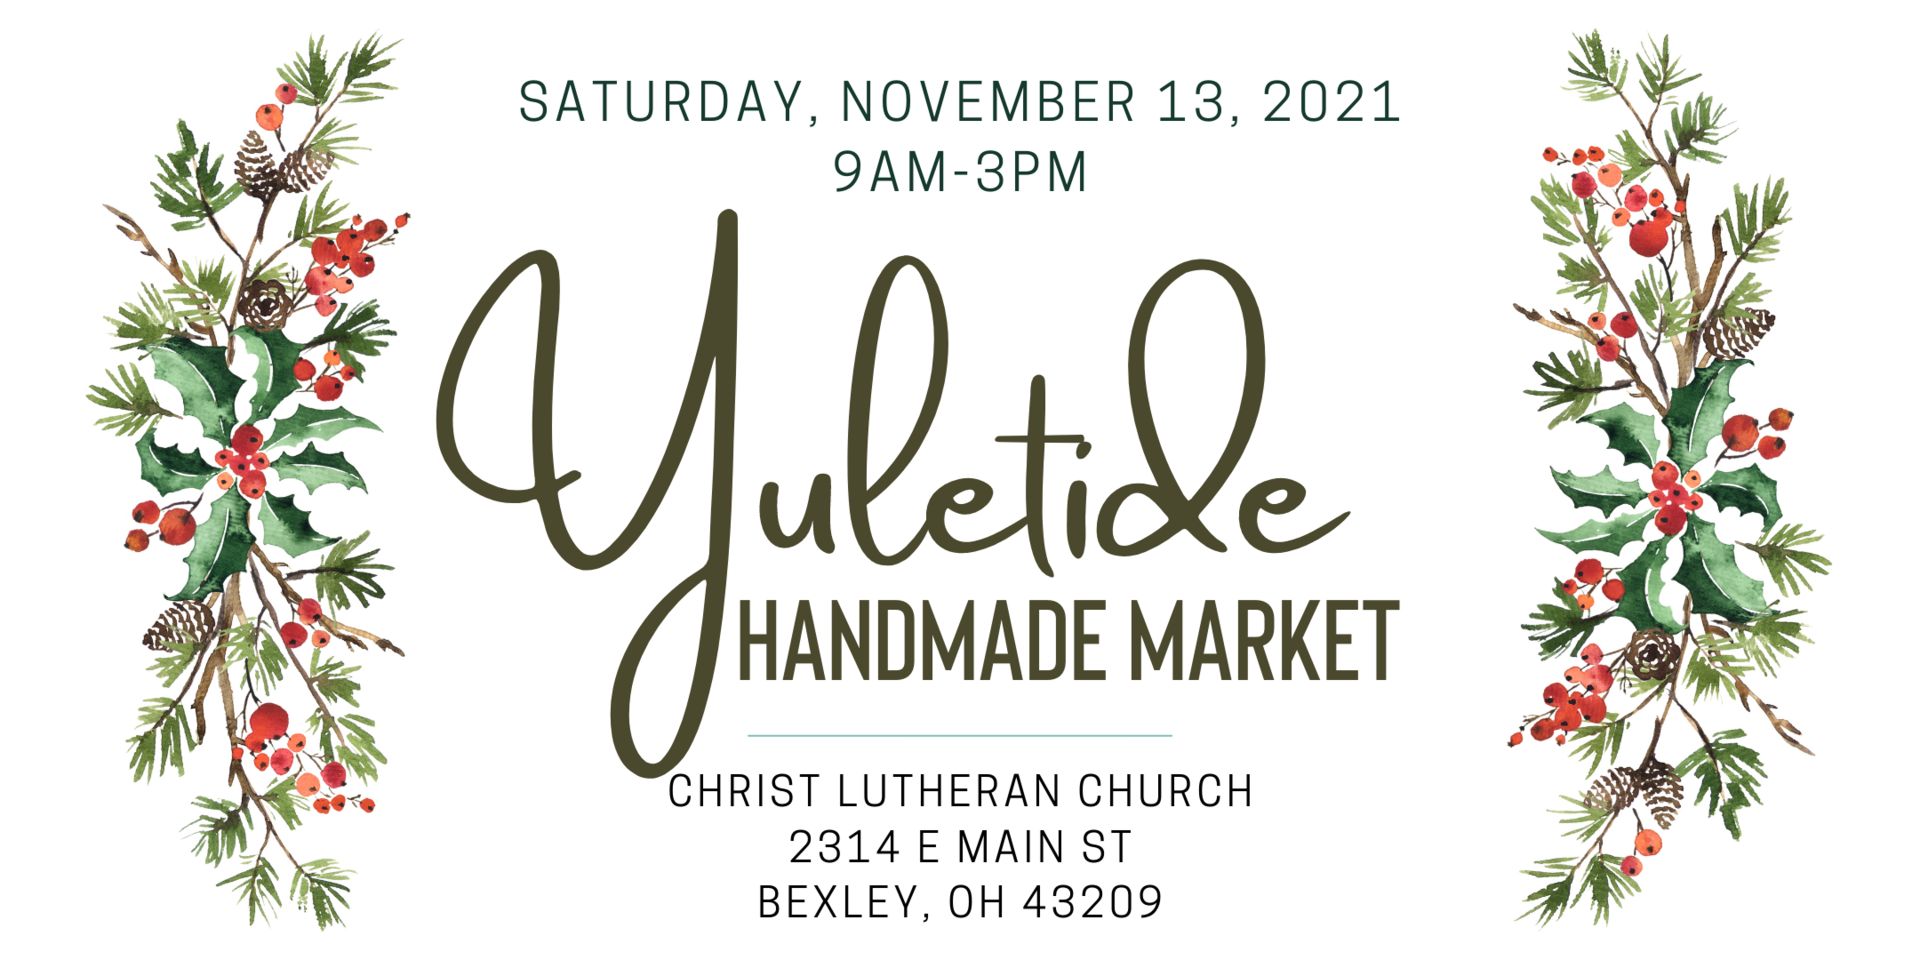 Yuletide Handmade Market, Bexley, Ohio, United States